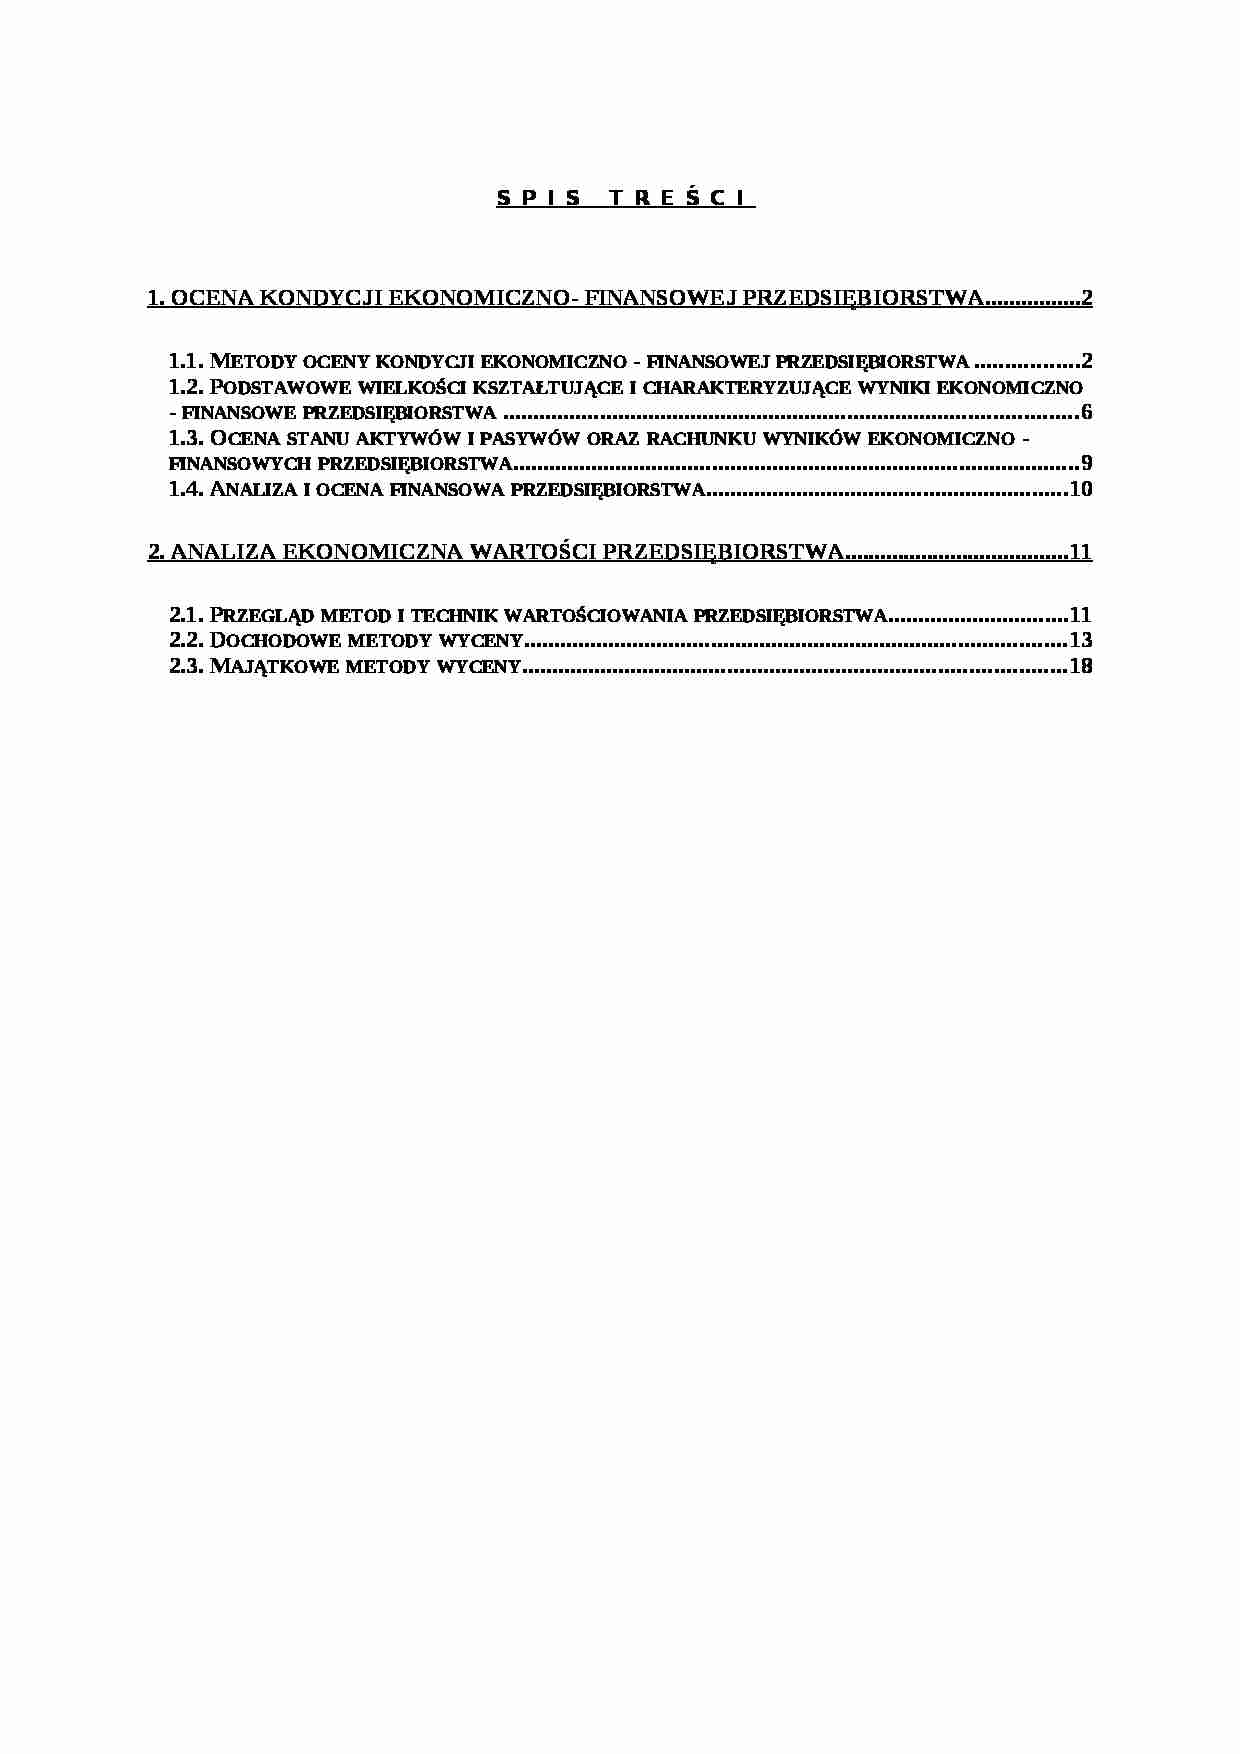 Ocena kondycji finansowo - ekonomicznej przedsiębiorstwa Projekt - strona 1